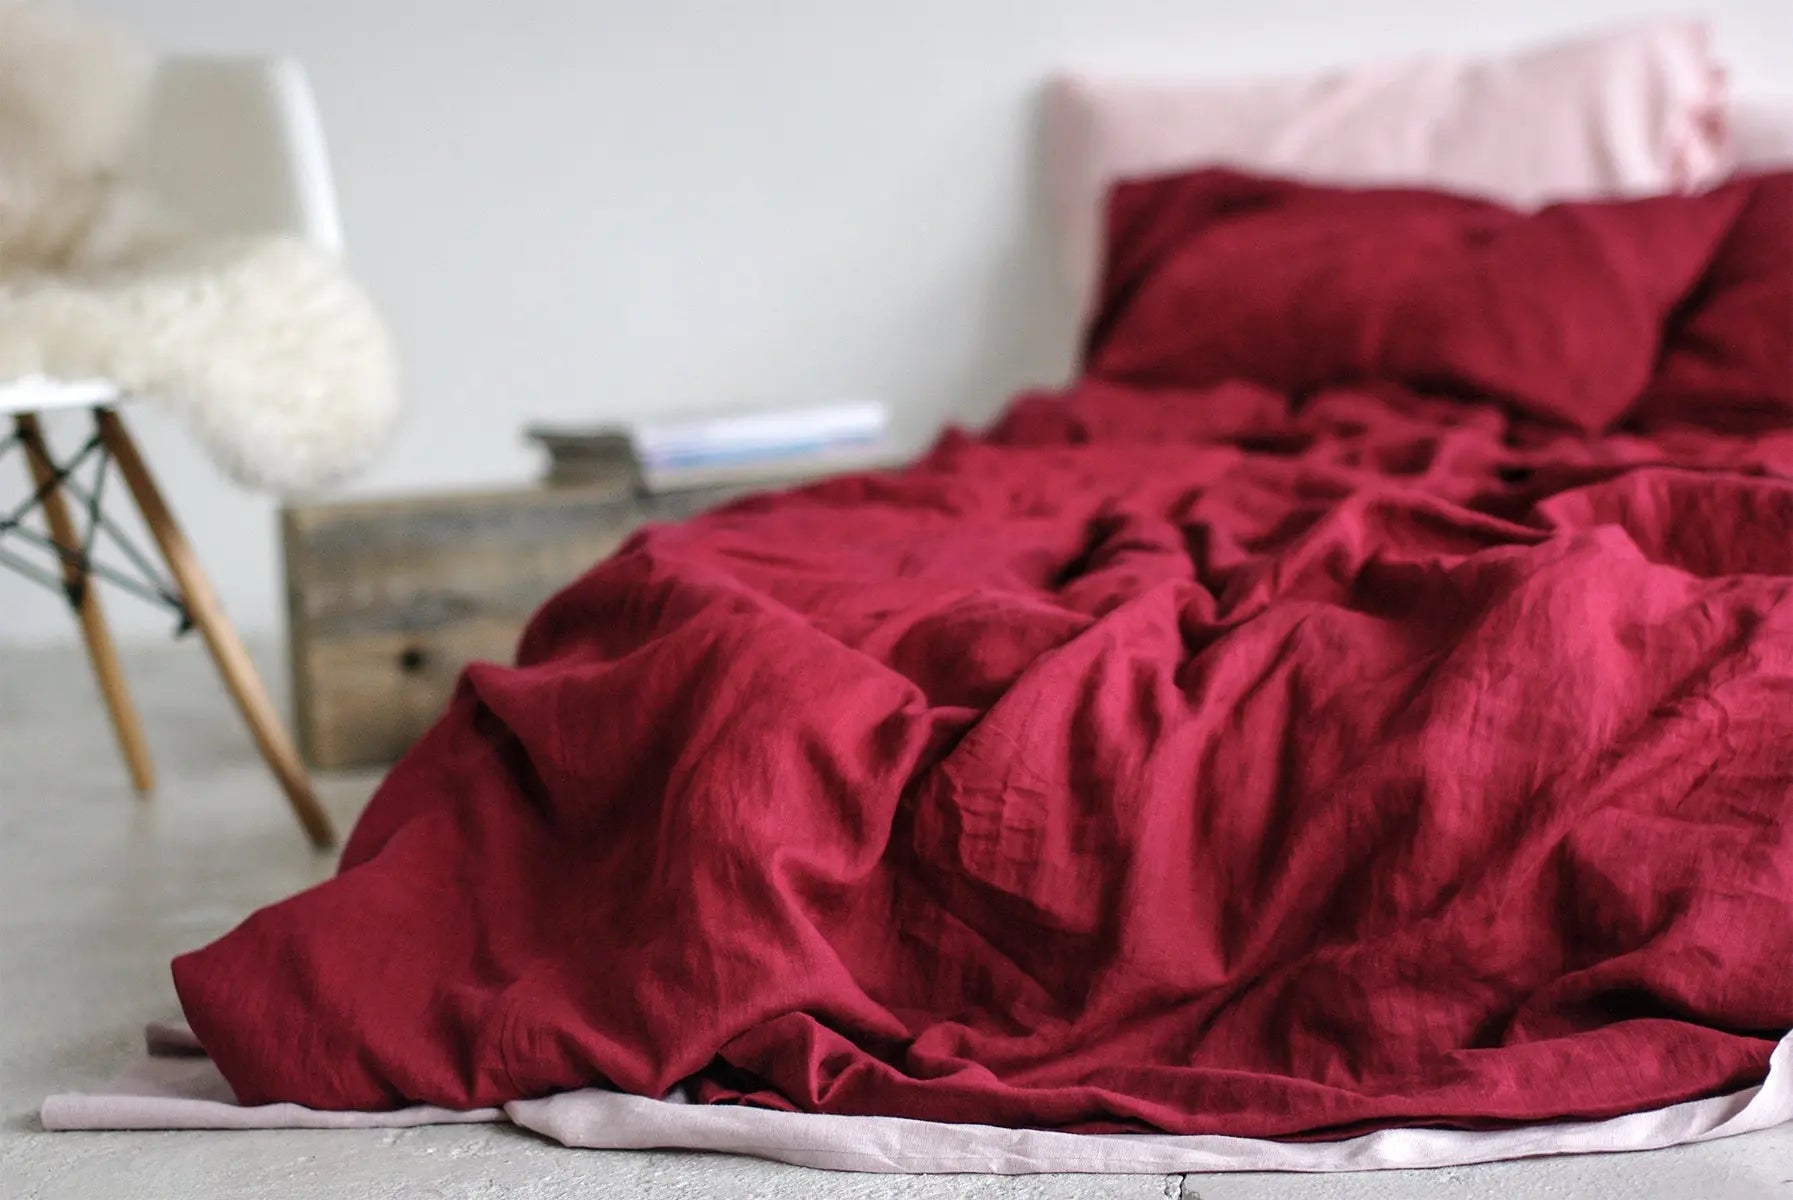 Linen Flat Sheet Dark Cherry Red - Epic Linen luxury linen